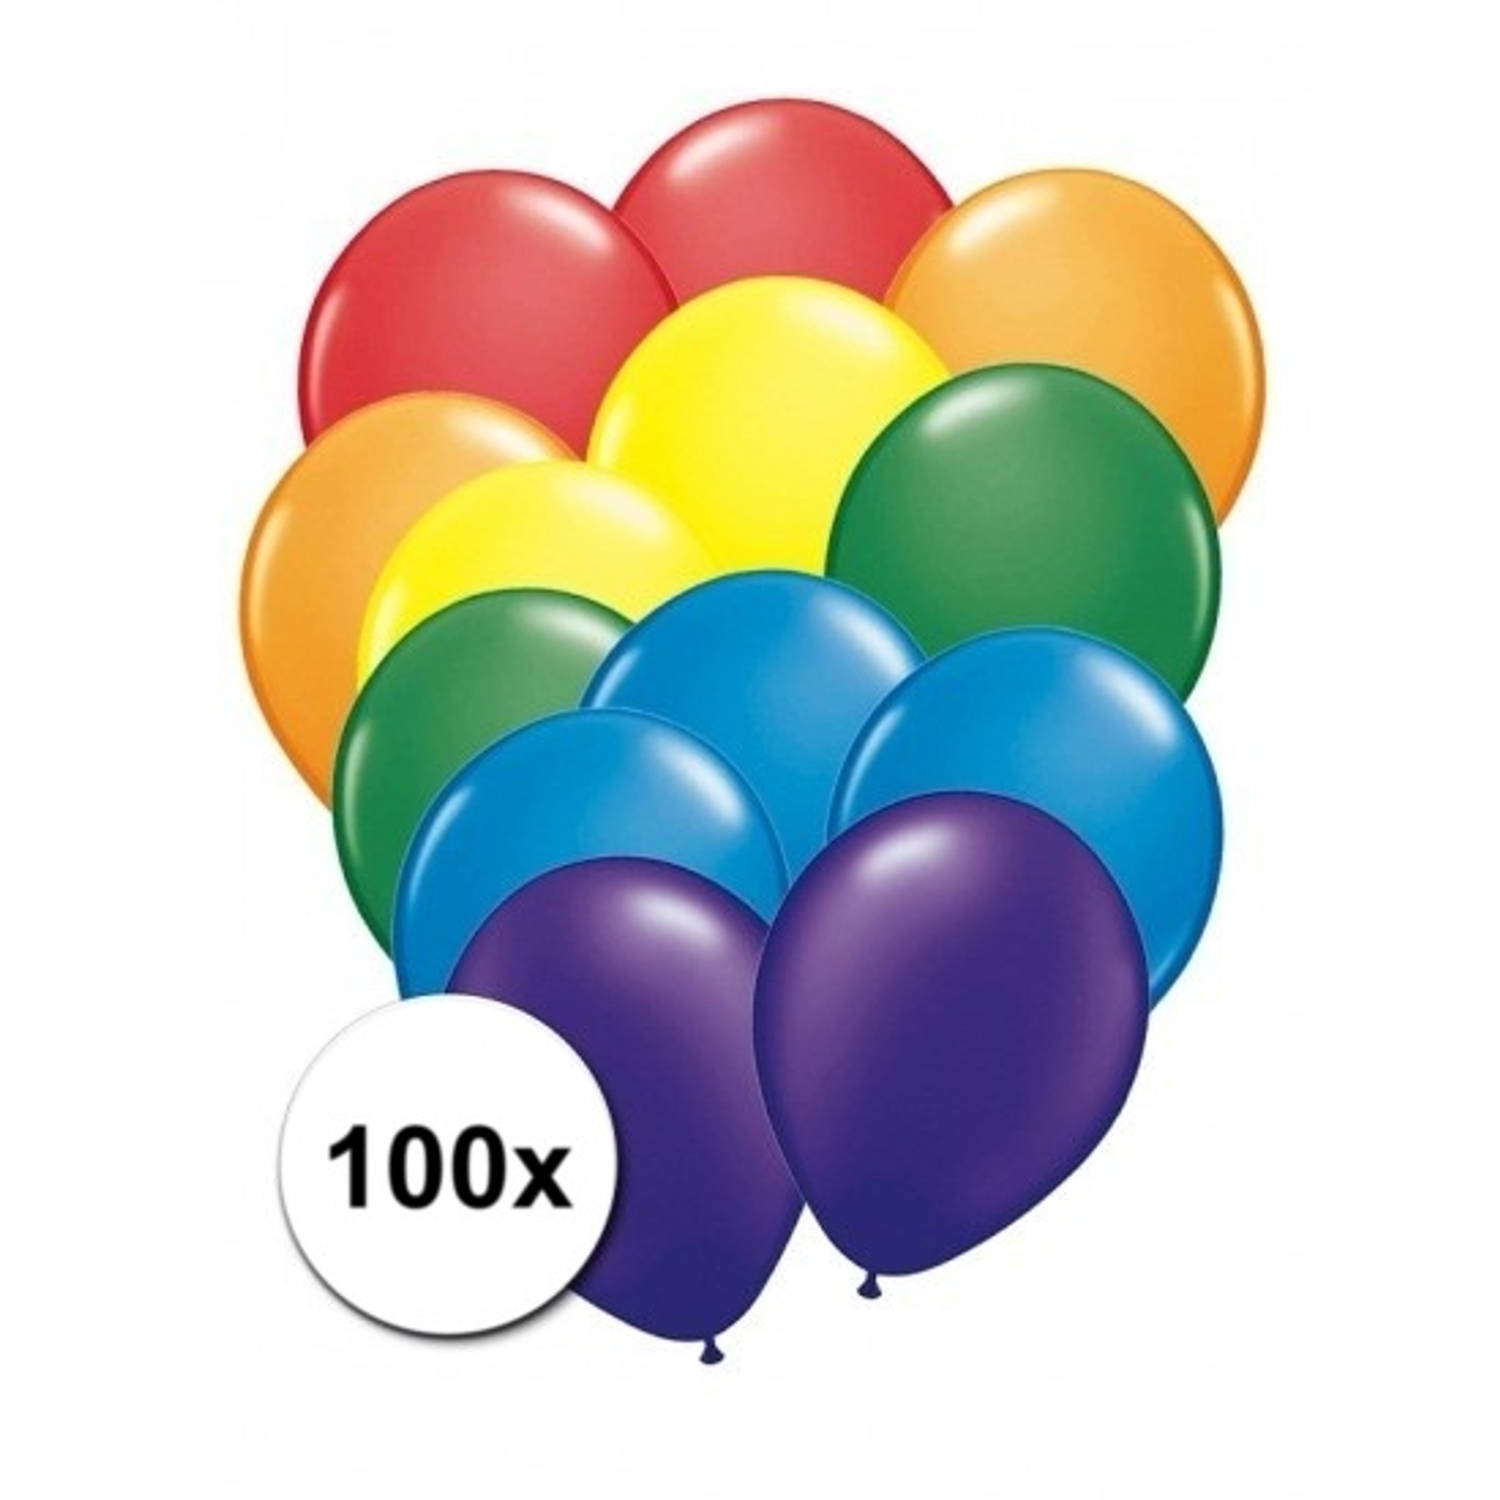 100 stuks regenboog ballonnen - Ballonnen